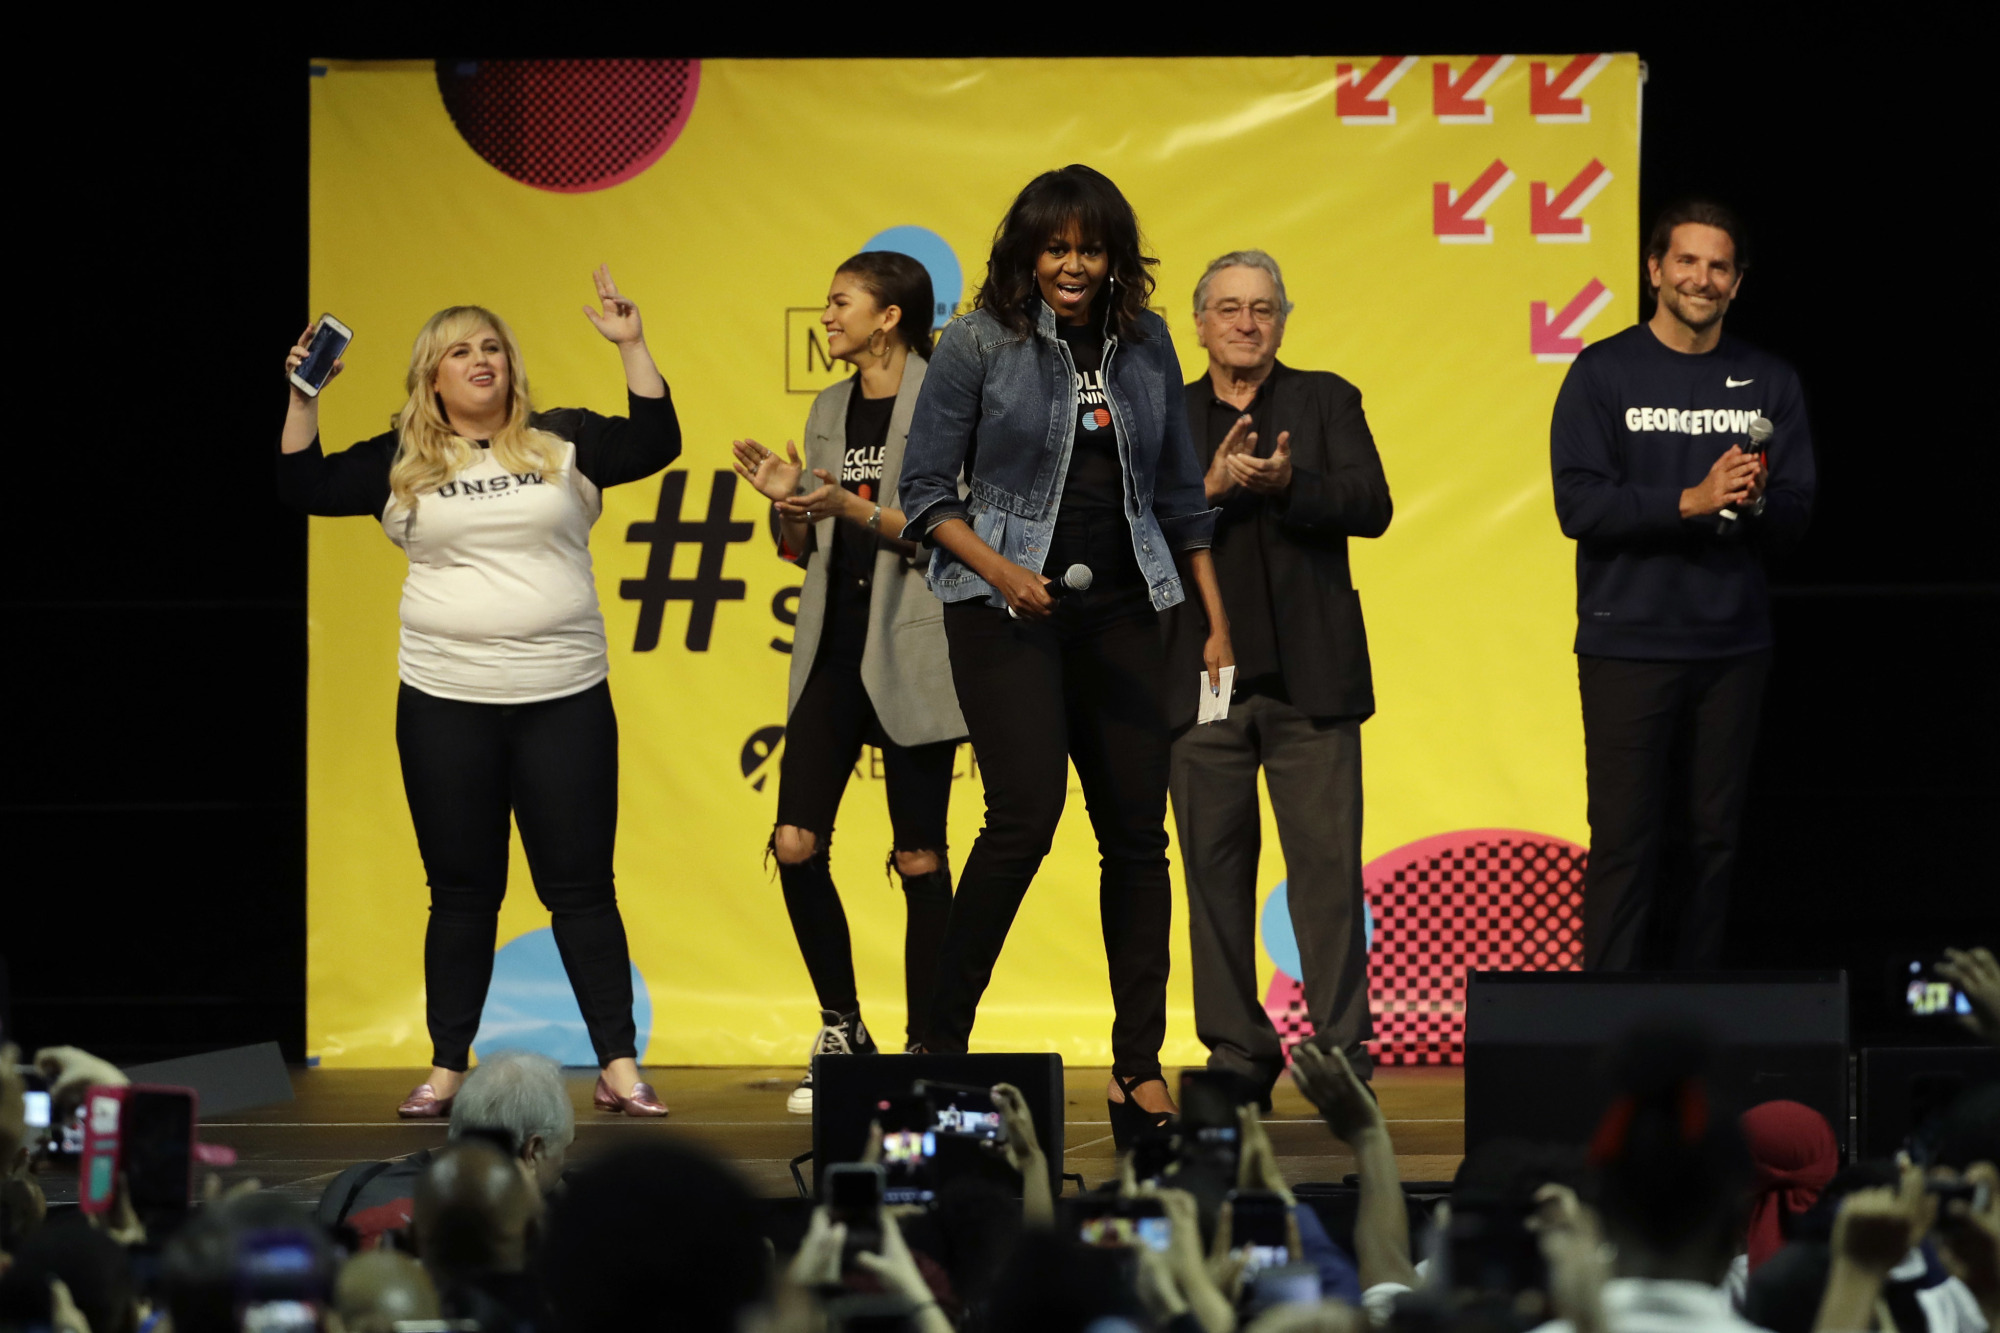 Michelle Obama, Robert DeNiro, Zendaya fete college-bound kids with dance party | The ...